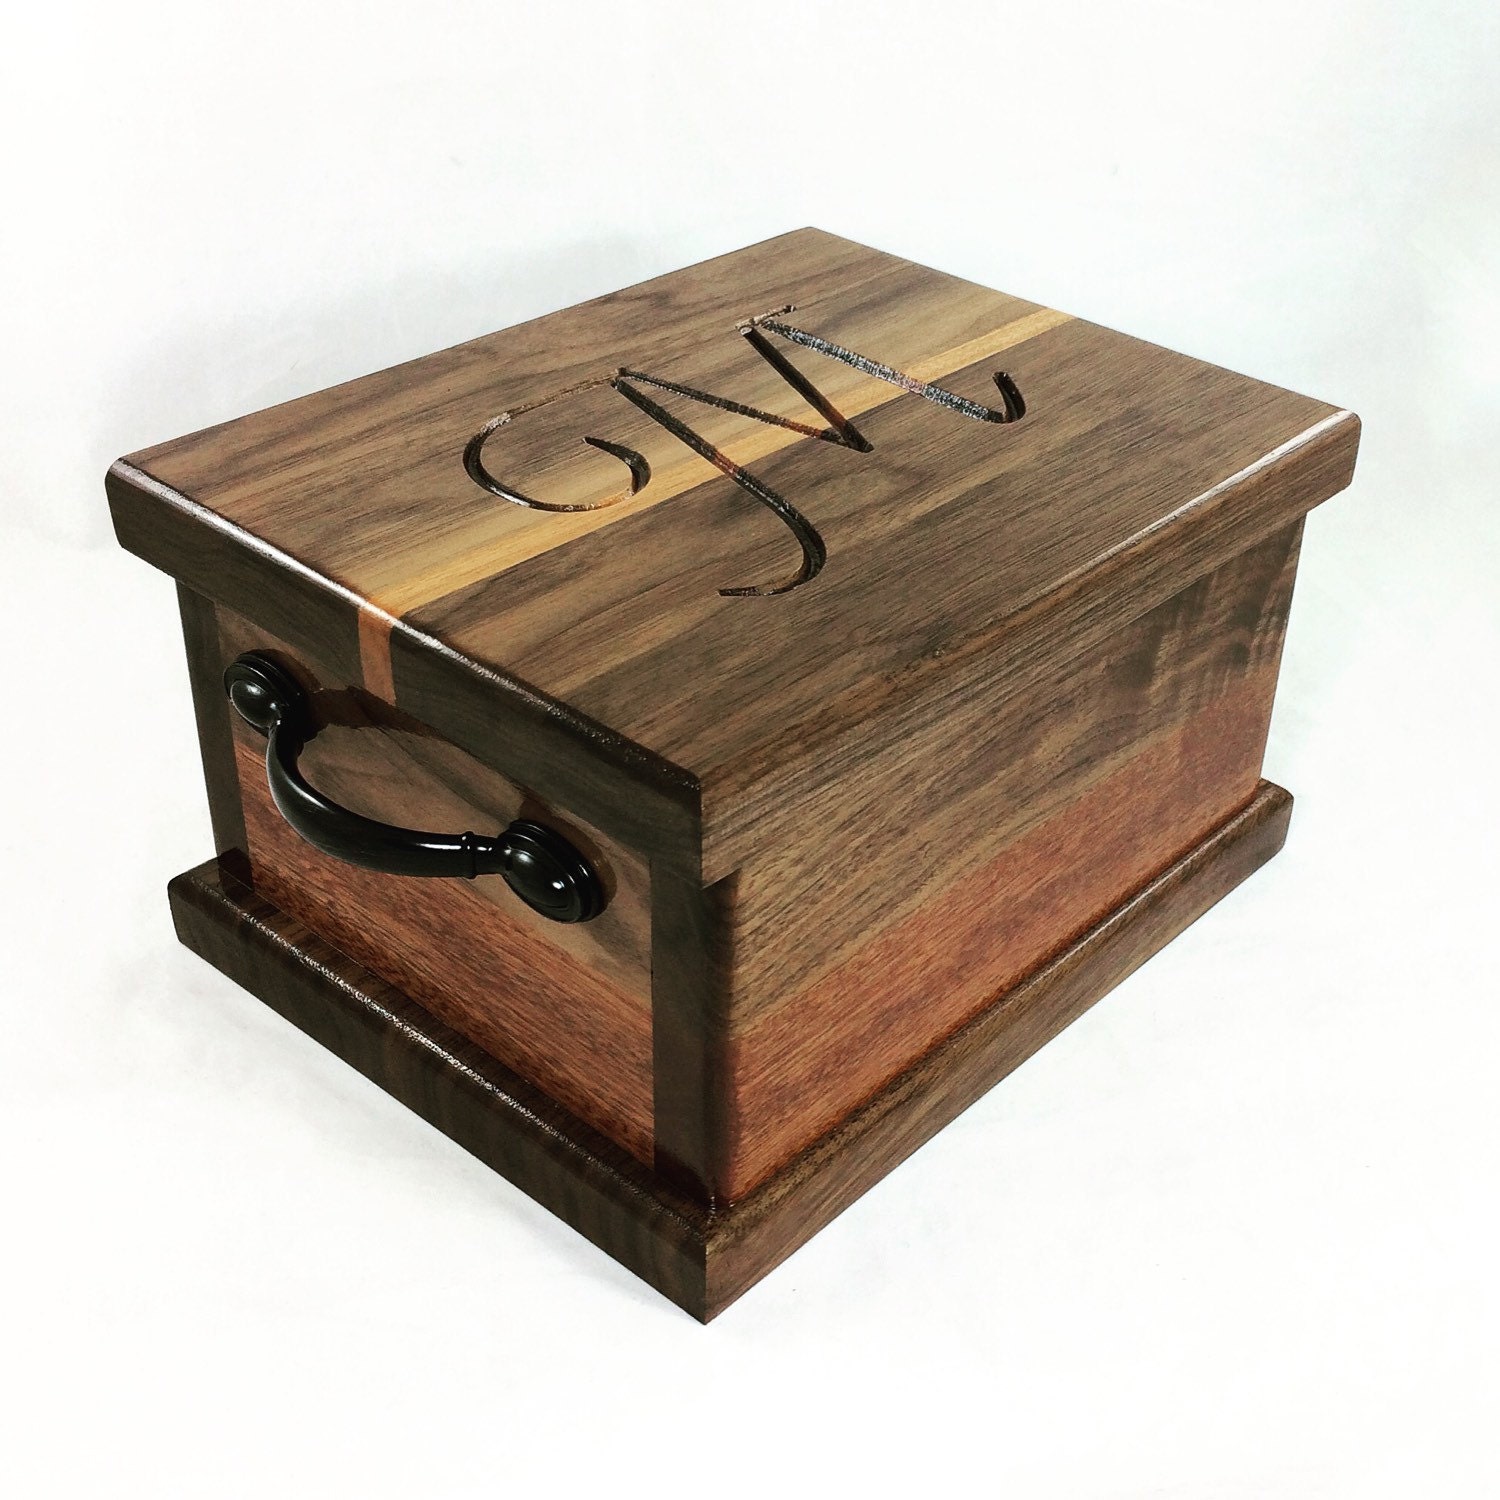 Personalised wooden trinket box